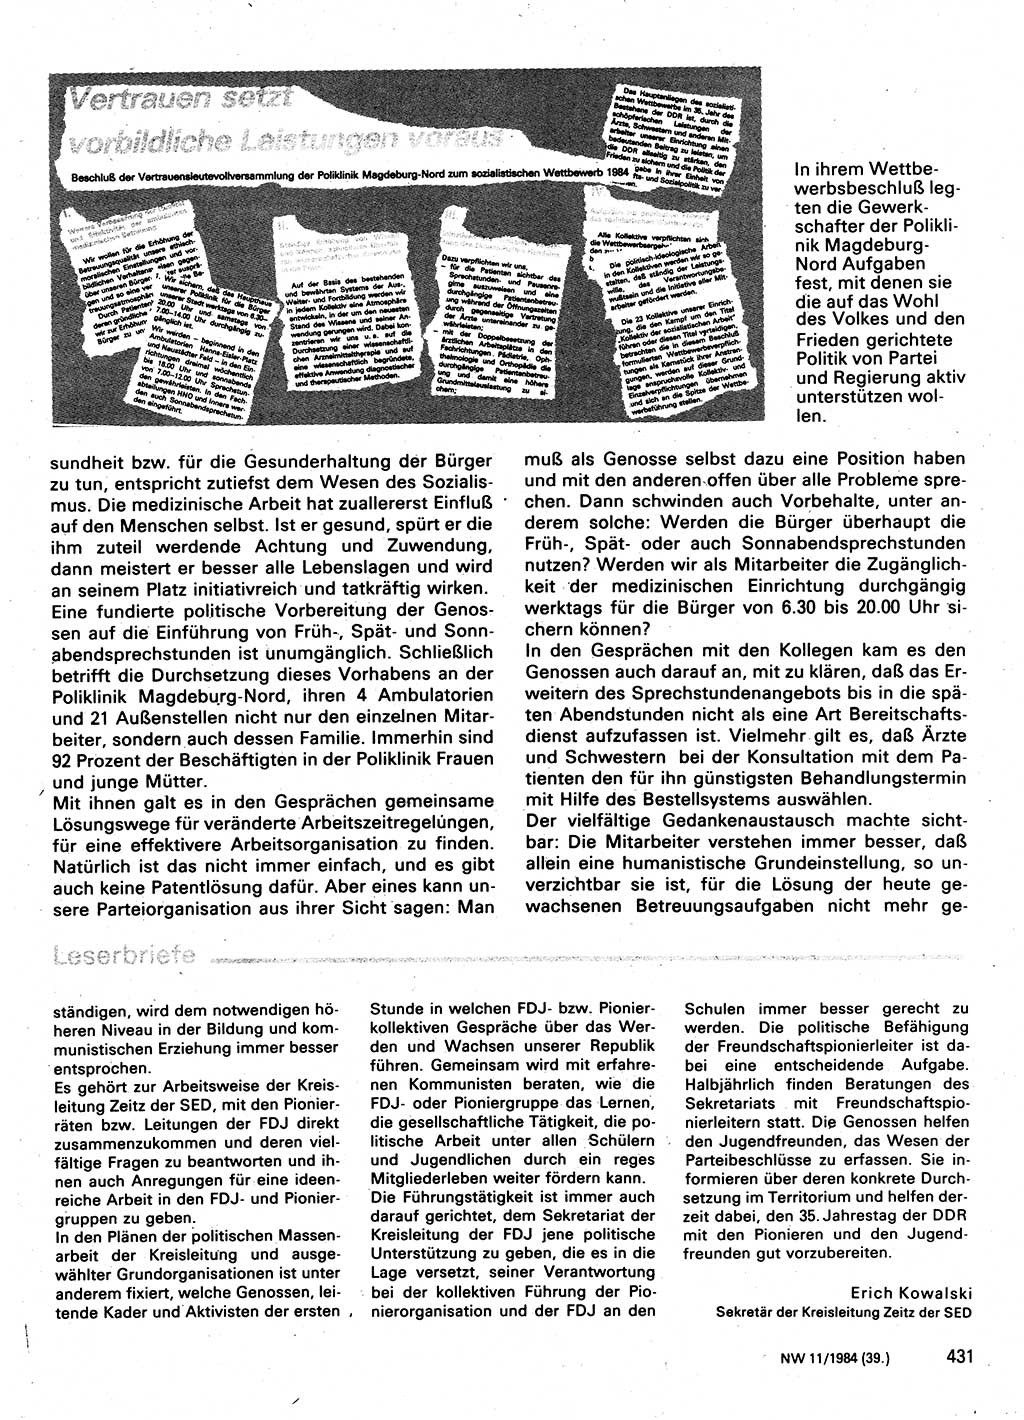 Neuer Weg (NW), Organ des Zentralkomitees (ZK) der SED (Sozialistische Einheitspartei Deutschlands) für Fragen des Parteilebens, 39. Jahrgang [Deutsche Demokratische Republik (DDR)] 1984, Seite 431 (NW ZK SED DDR 1984, S. 431)